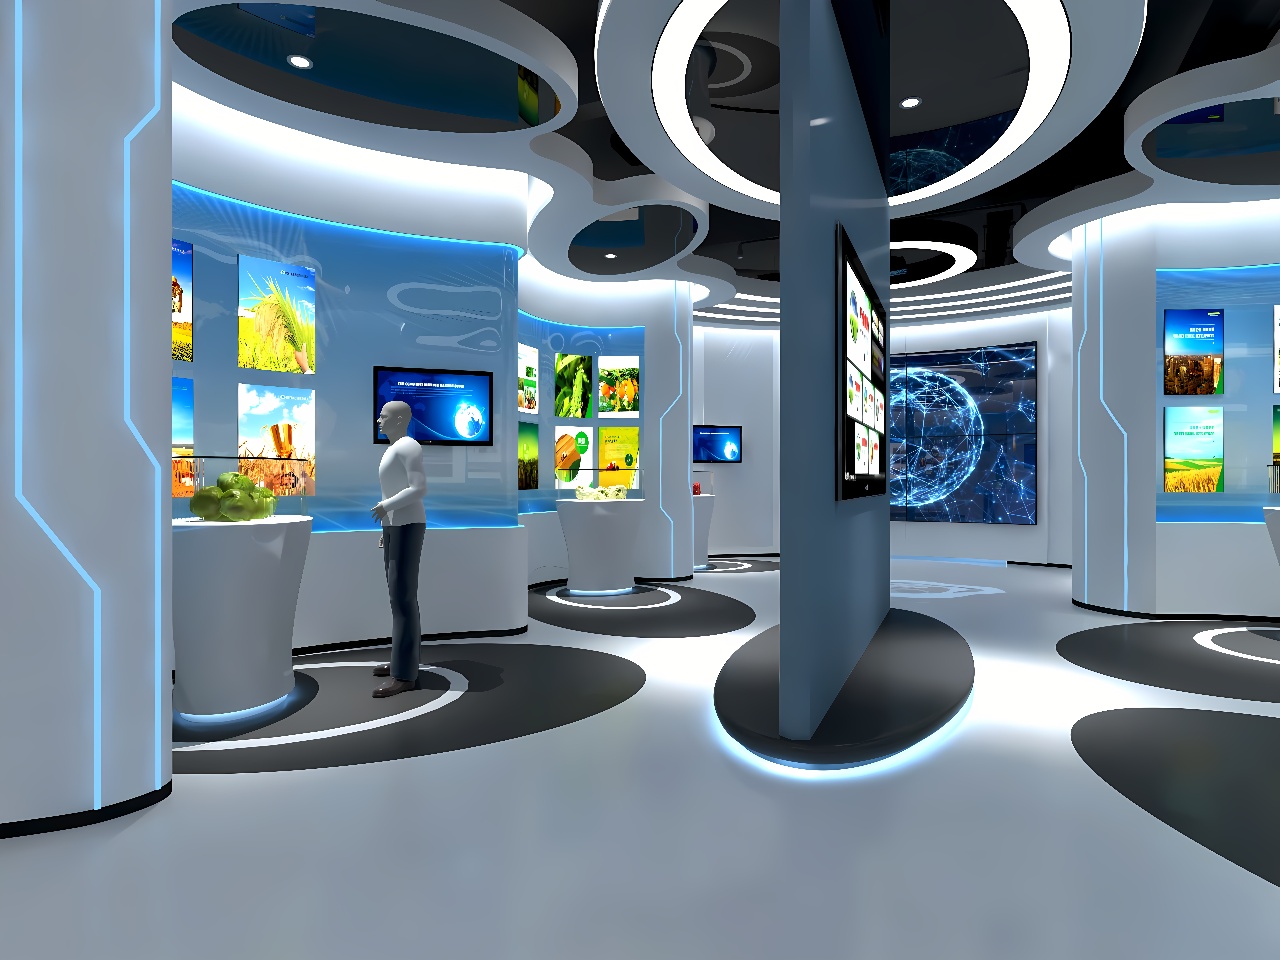 这是一张现代科技展览馆内部的图片，展示有多个互动屏幕和展示柜，设计现代，色调以白蓝为主，有人在观看展示内容。